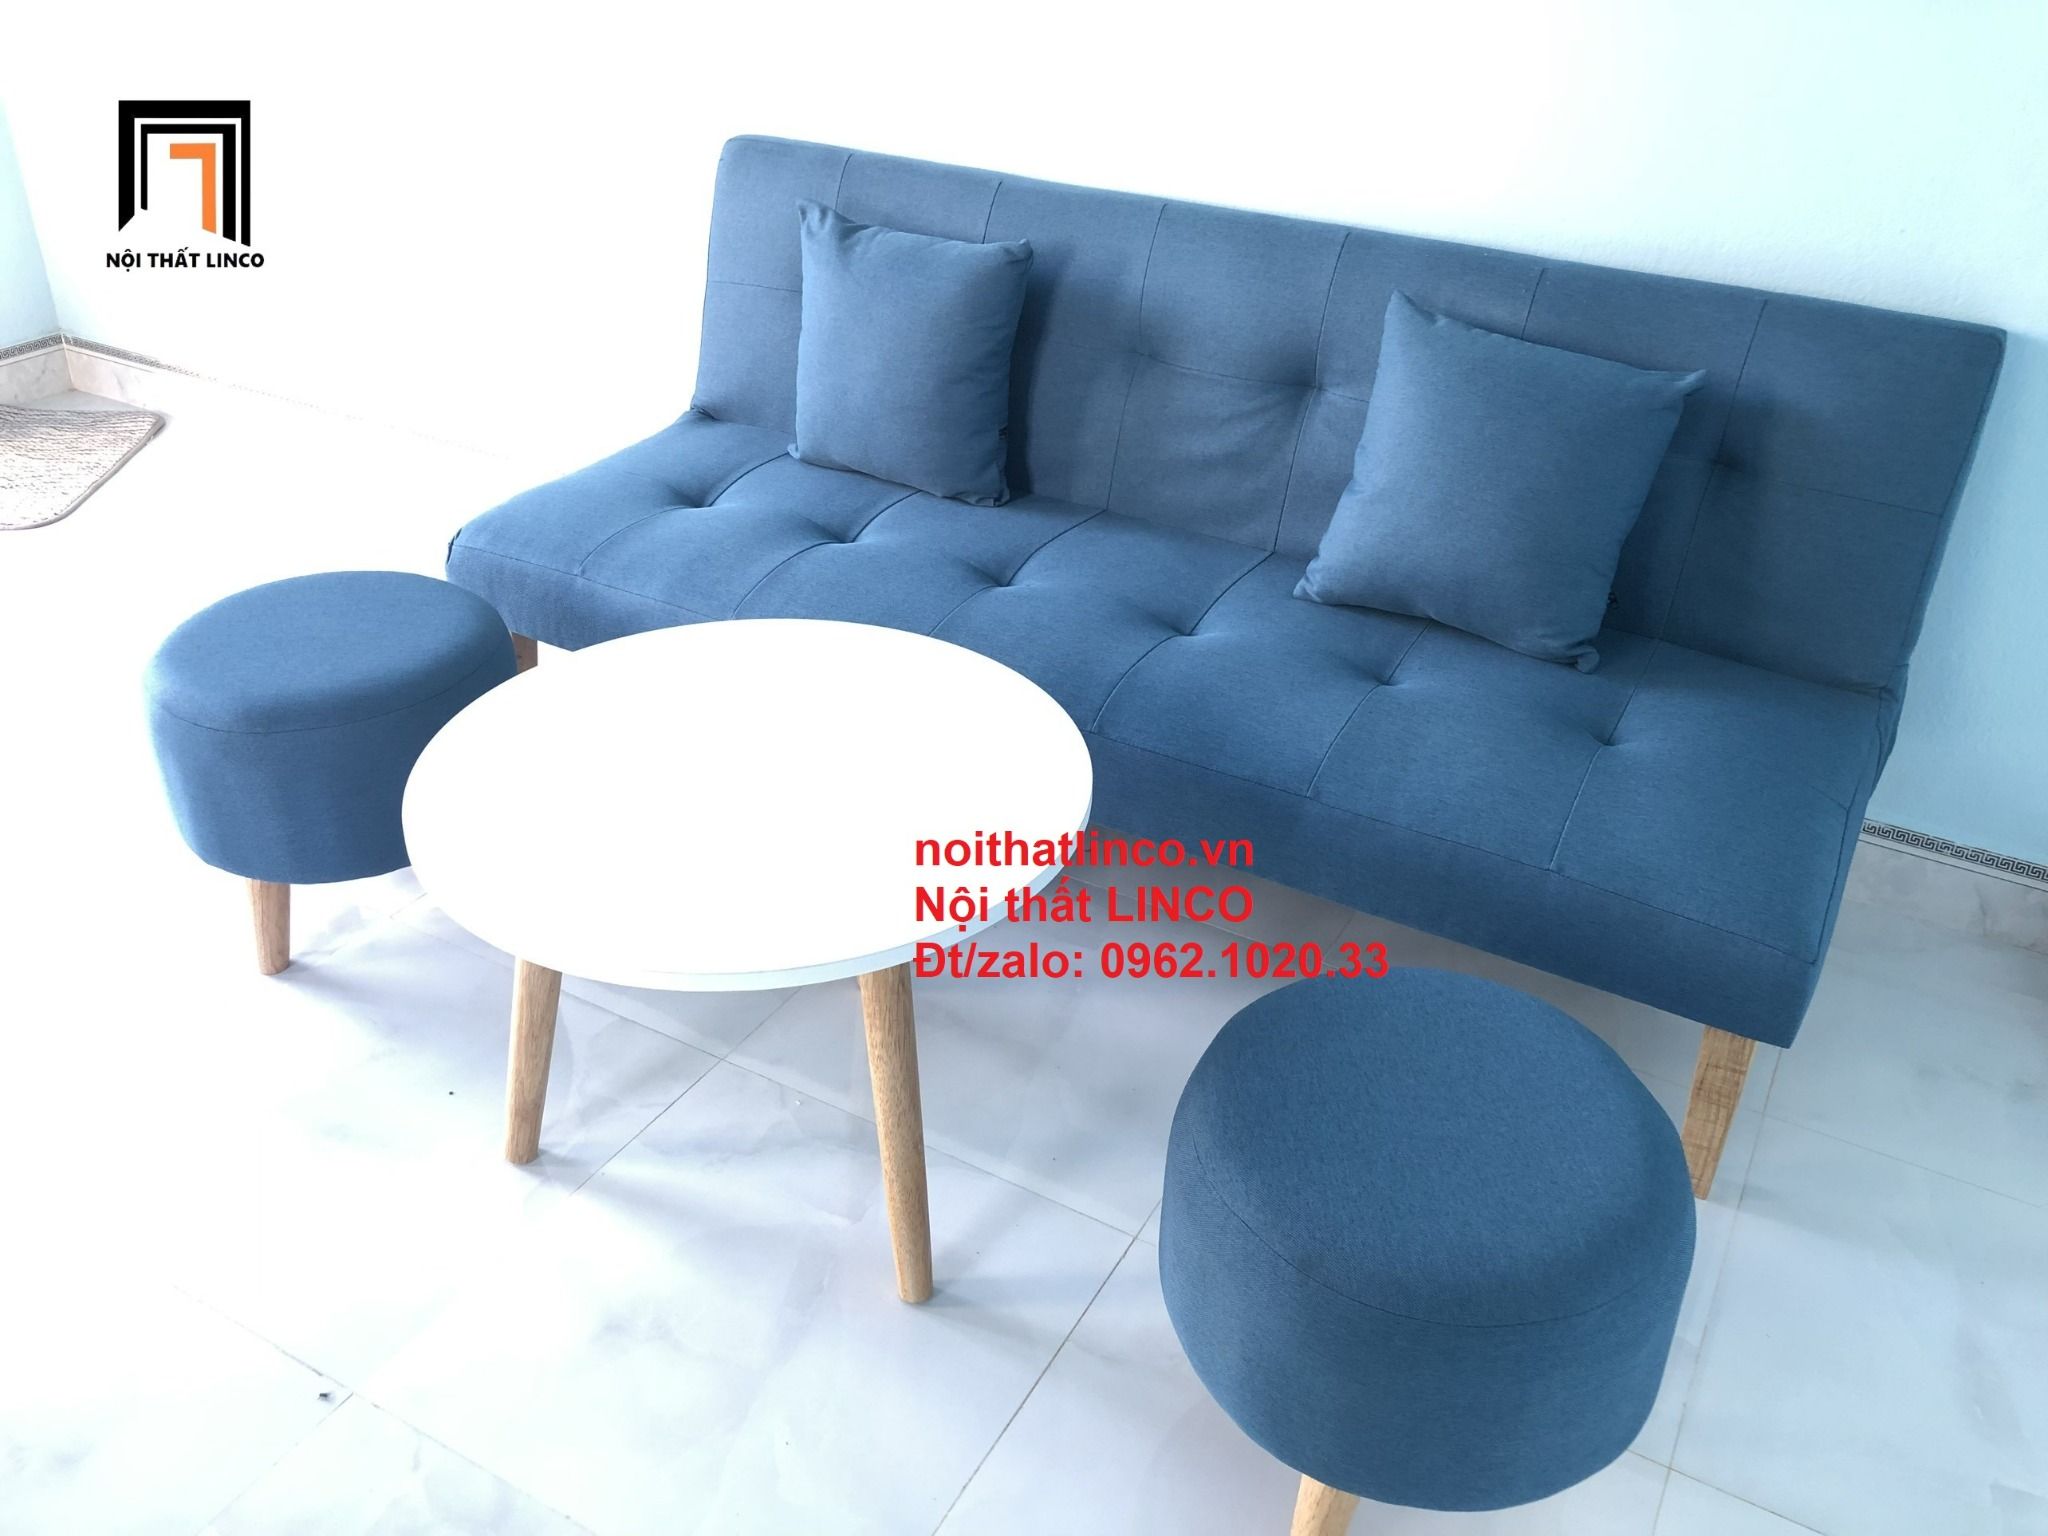 Bộ ghế sofa bed giường nằm xanh dương giá rẻ nhỏ gọn Sài Gòn SG Tphcm – Nội  thất Linco Sài Gòn